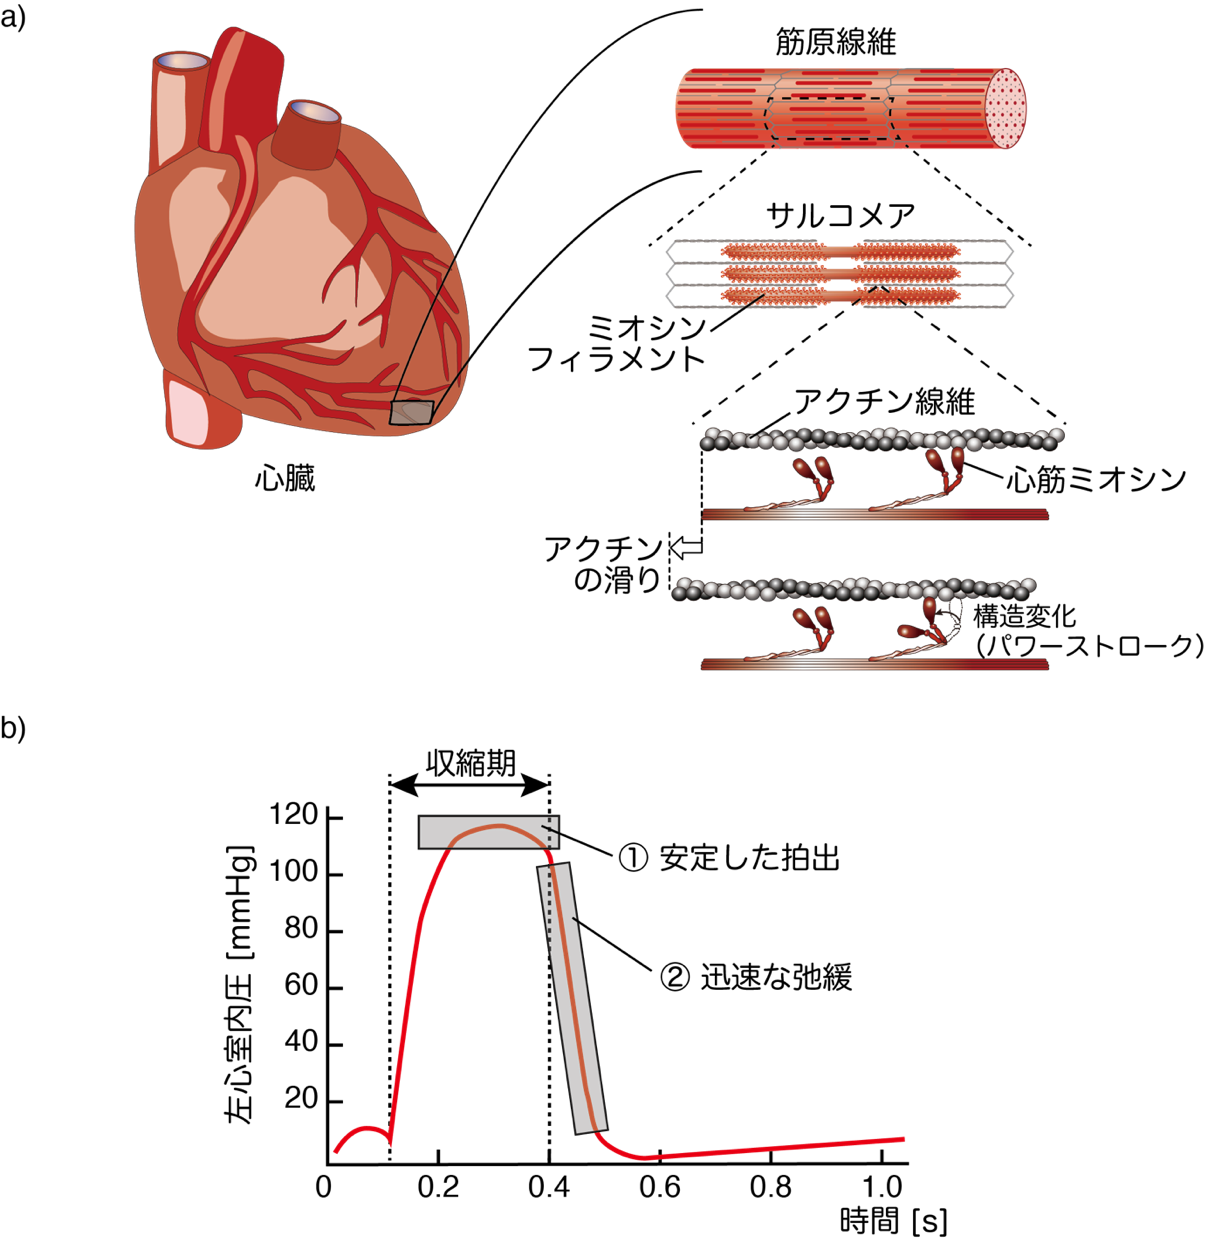 安定でエコな心臓収縮を実現する仕組みを<br/>心臓のタンパク質、心筋ミオシンから発見